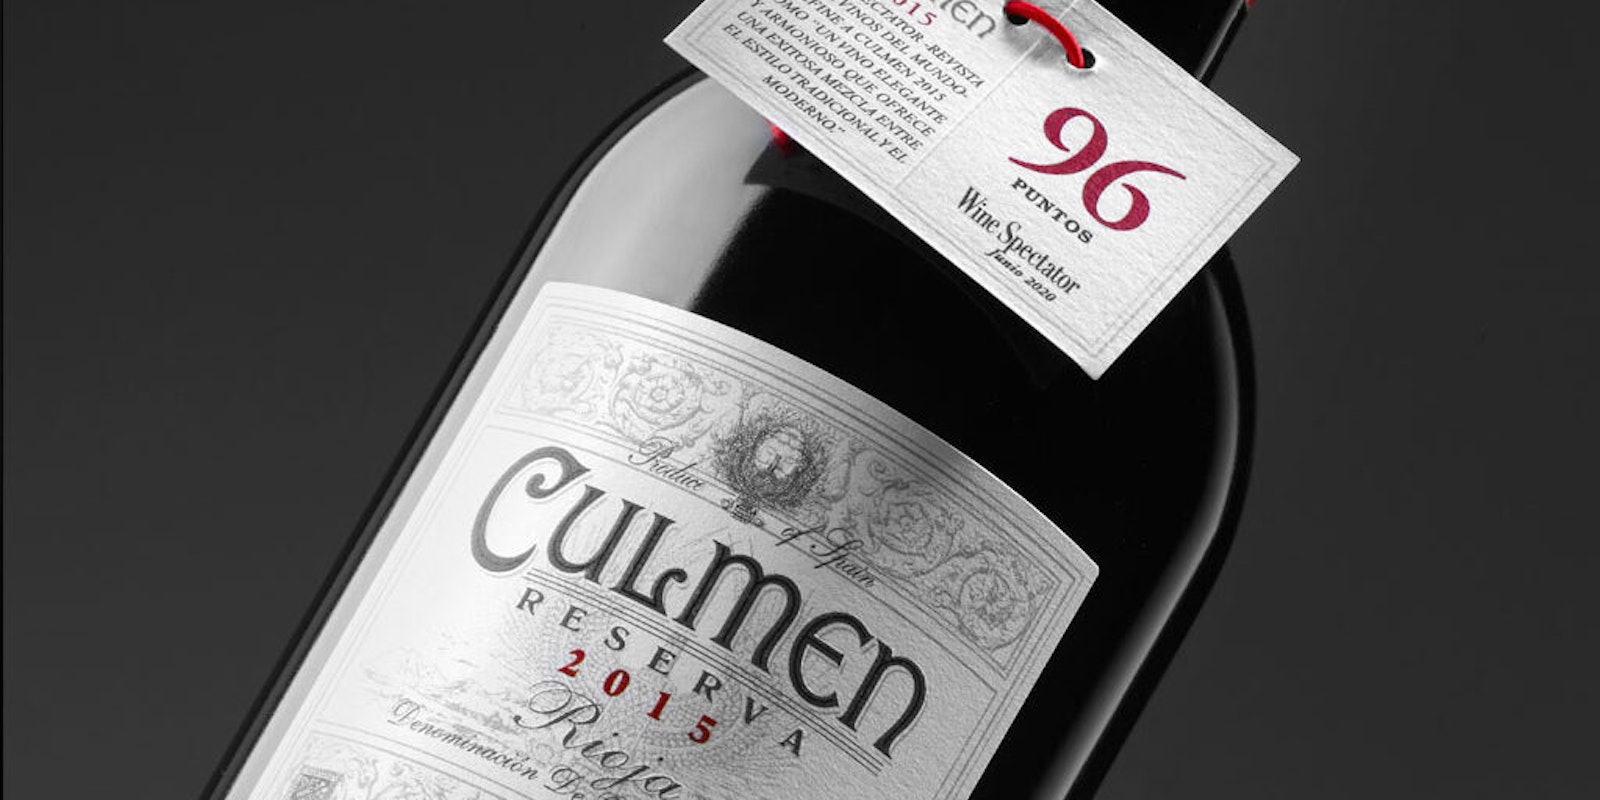 Lan Culmen wine